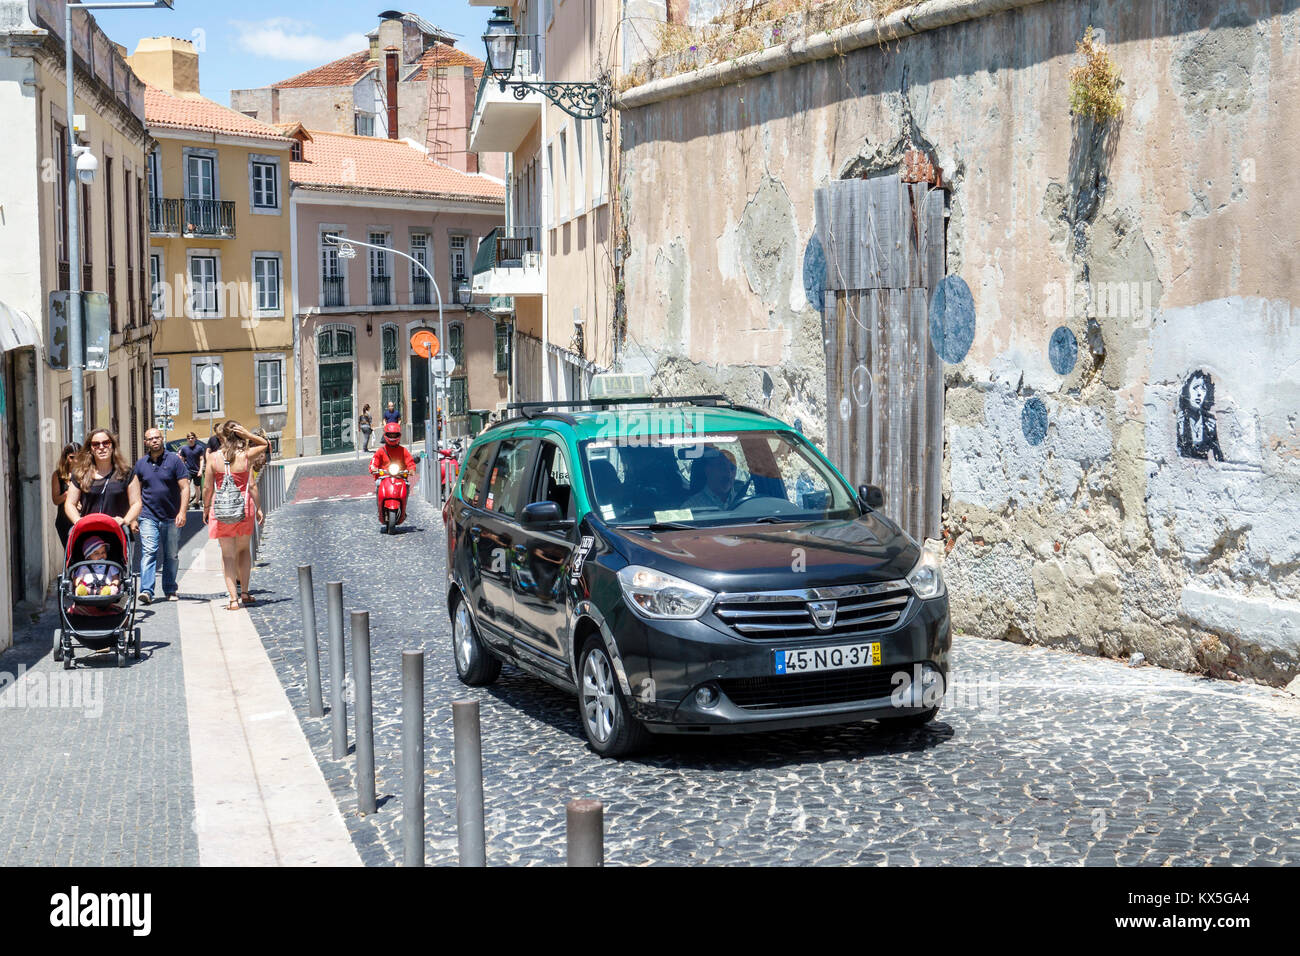 Lisbonne Portugal,Castelo quartier,Costa do Castelo,incliné,en amont,trottoir,taxi,femme femme femme,poussette,piéton,marche,pavé,hispanique,imm Banque D'Images